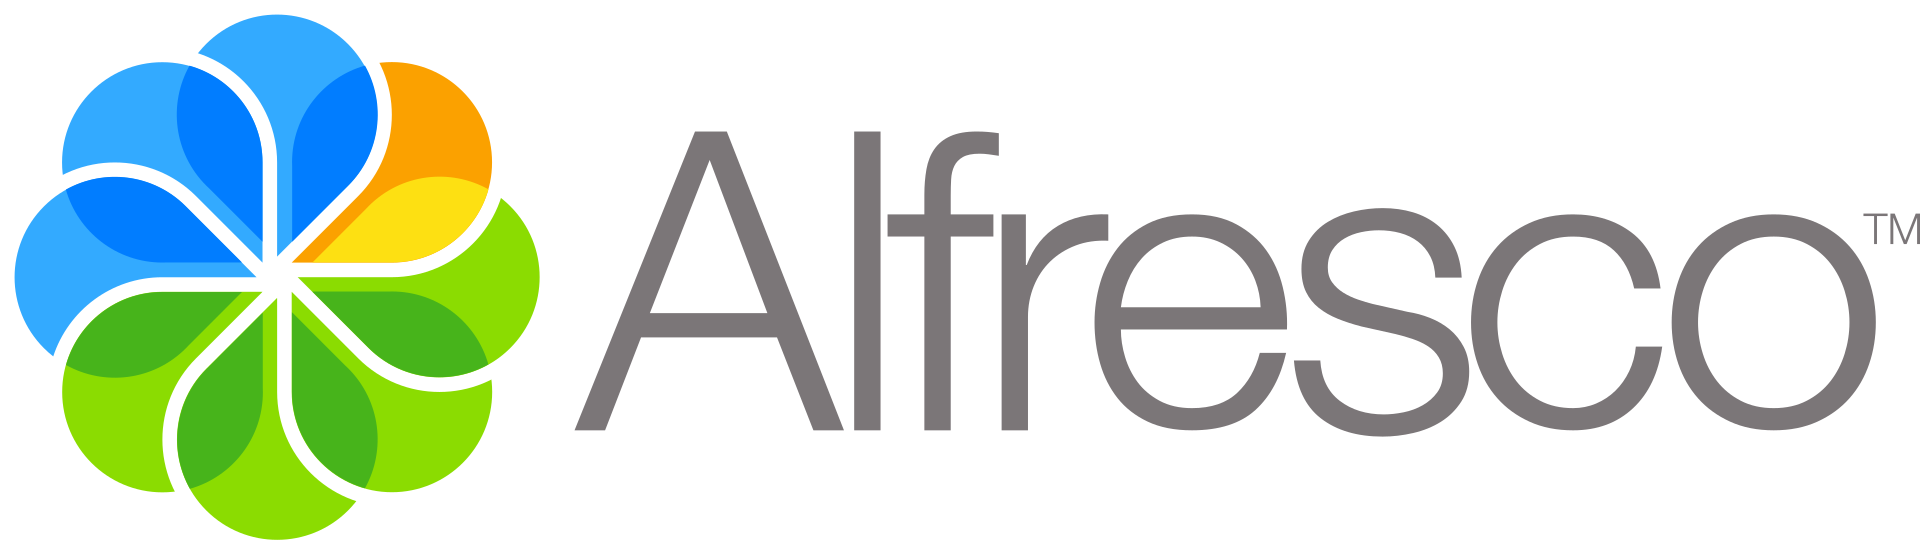 リックソフト、コンテンツ管理をカイゼンしたいお客さまの利用促進を目指し文書管理システム「Alfresco」の日本語版ユーザーマニュアルを公開